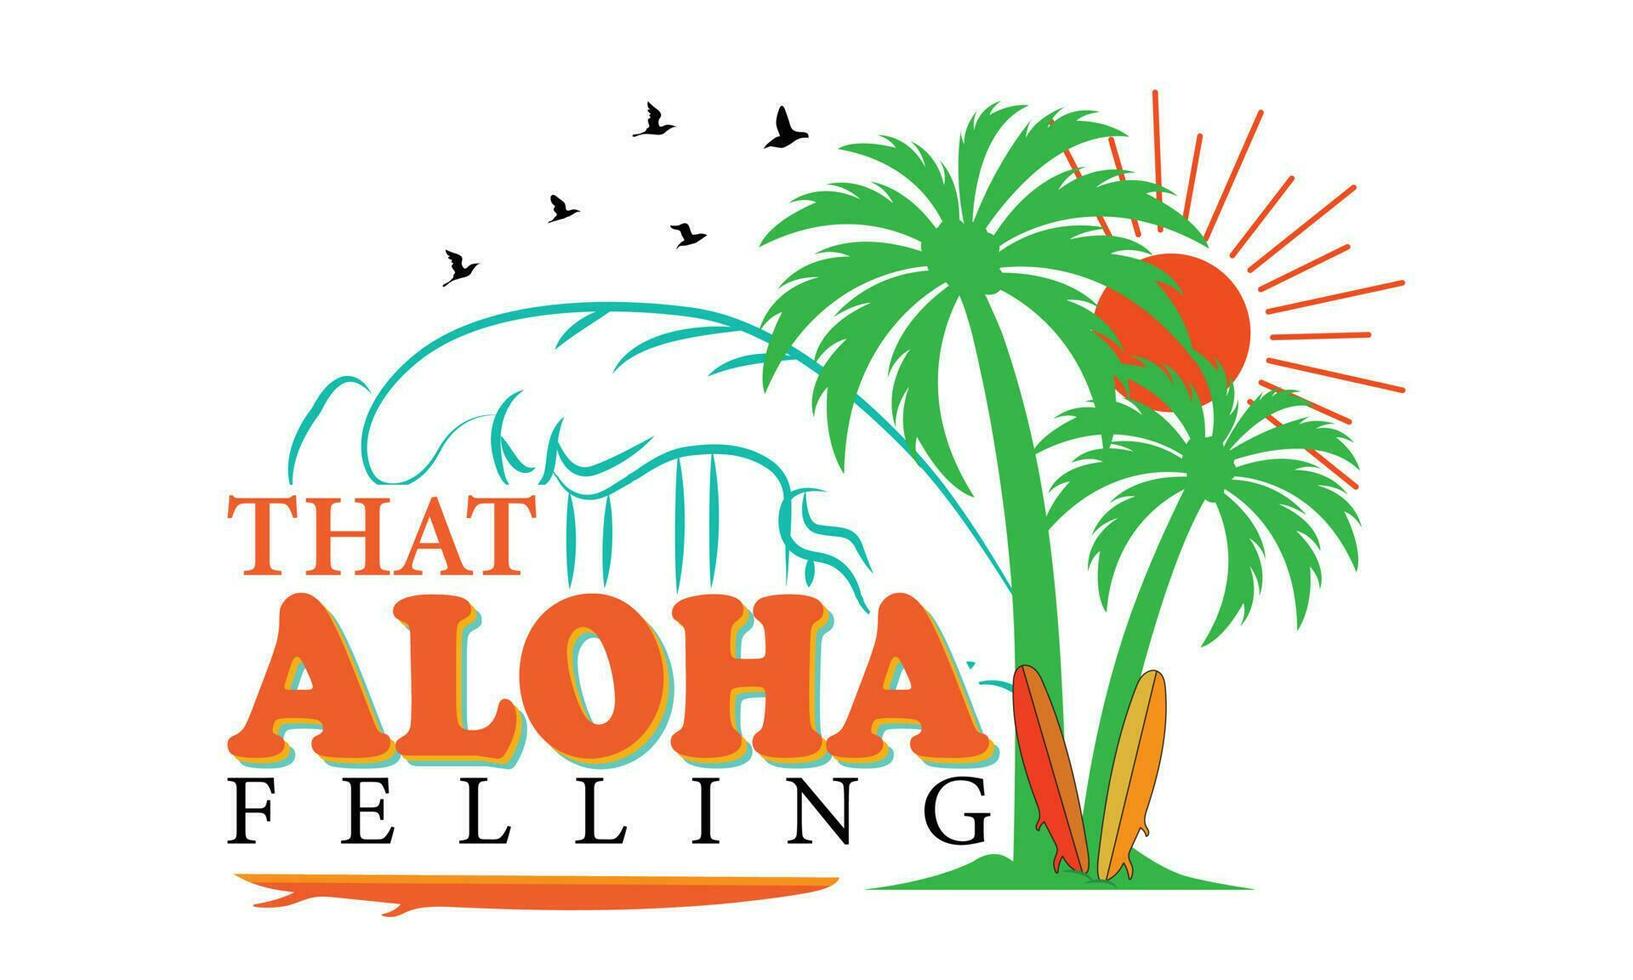 ese aloha tala camiseta diseño vector ilustración, aloha Hawai floral camiseta impresión. navegar paraíso, Pacífico Oceano tipografía. surf relacionado vestir diseño. vector Clásico ilustración.